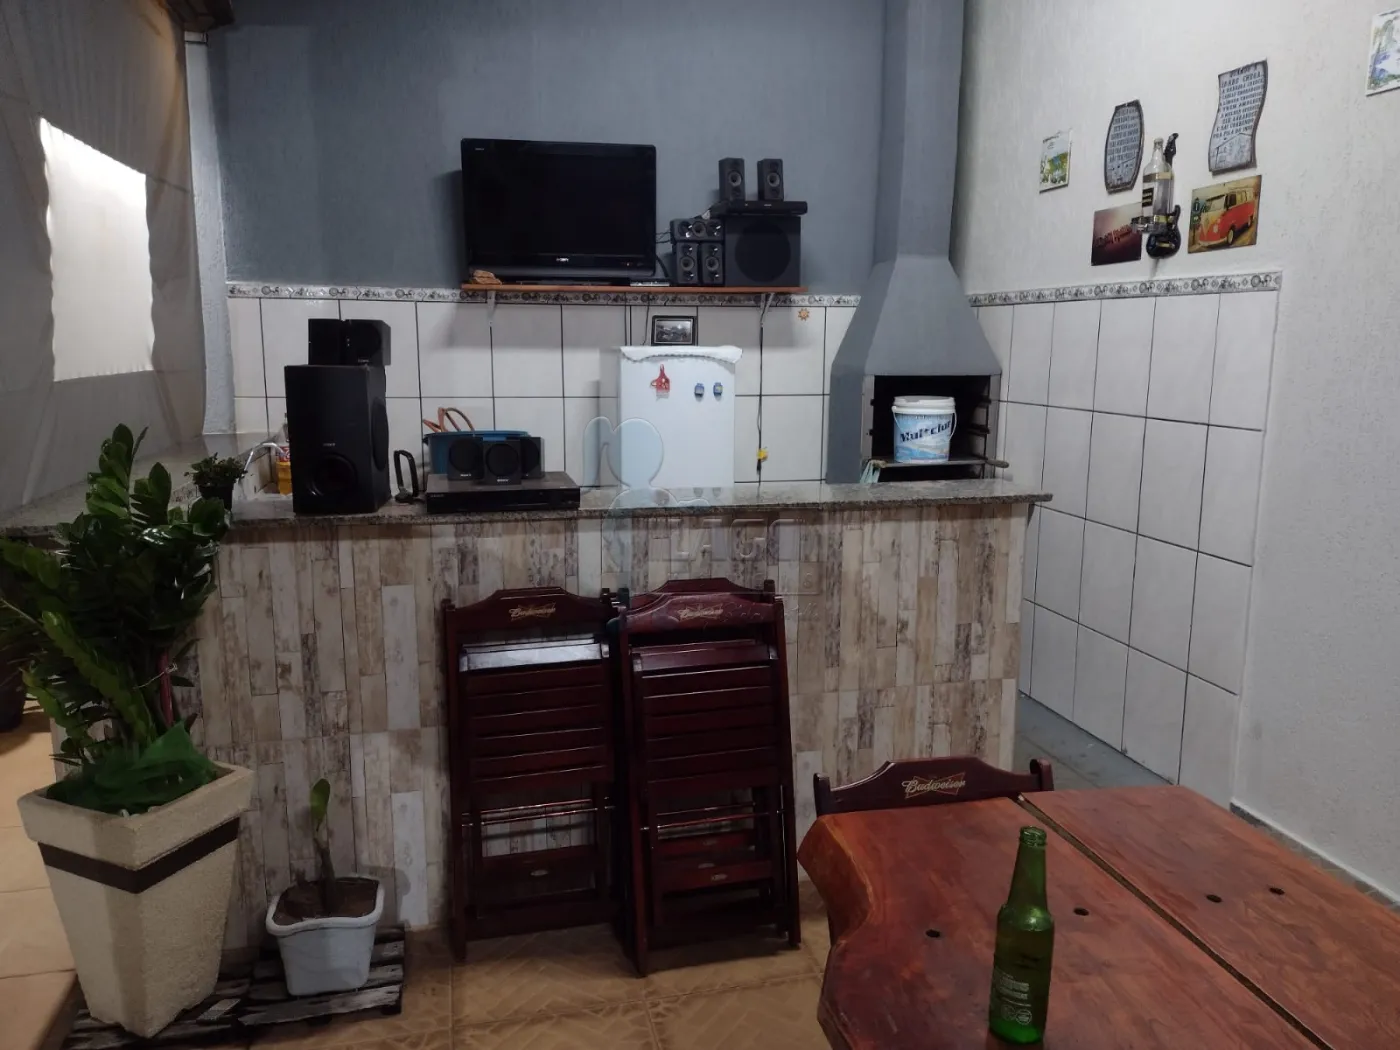 Alugar Casas / Padrão em Ribeirão Preto R$ 1.700,00 - Foto 31